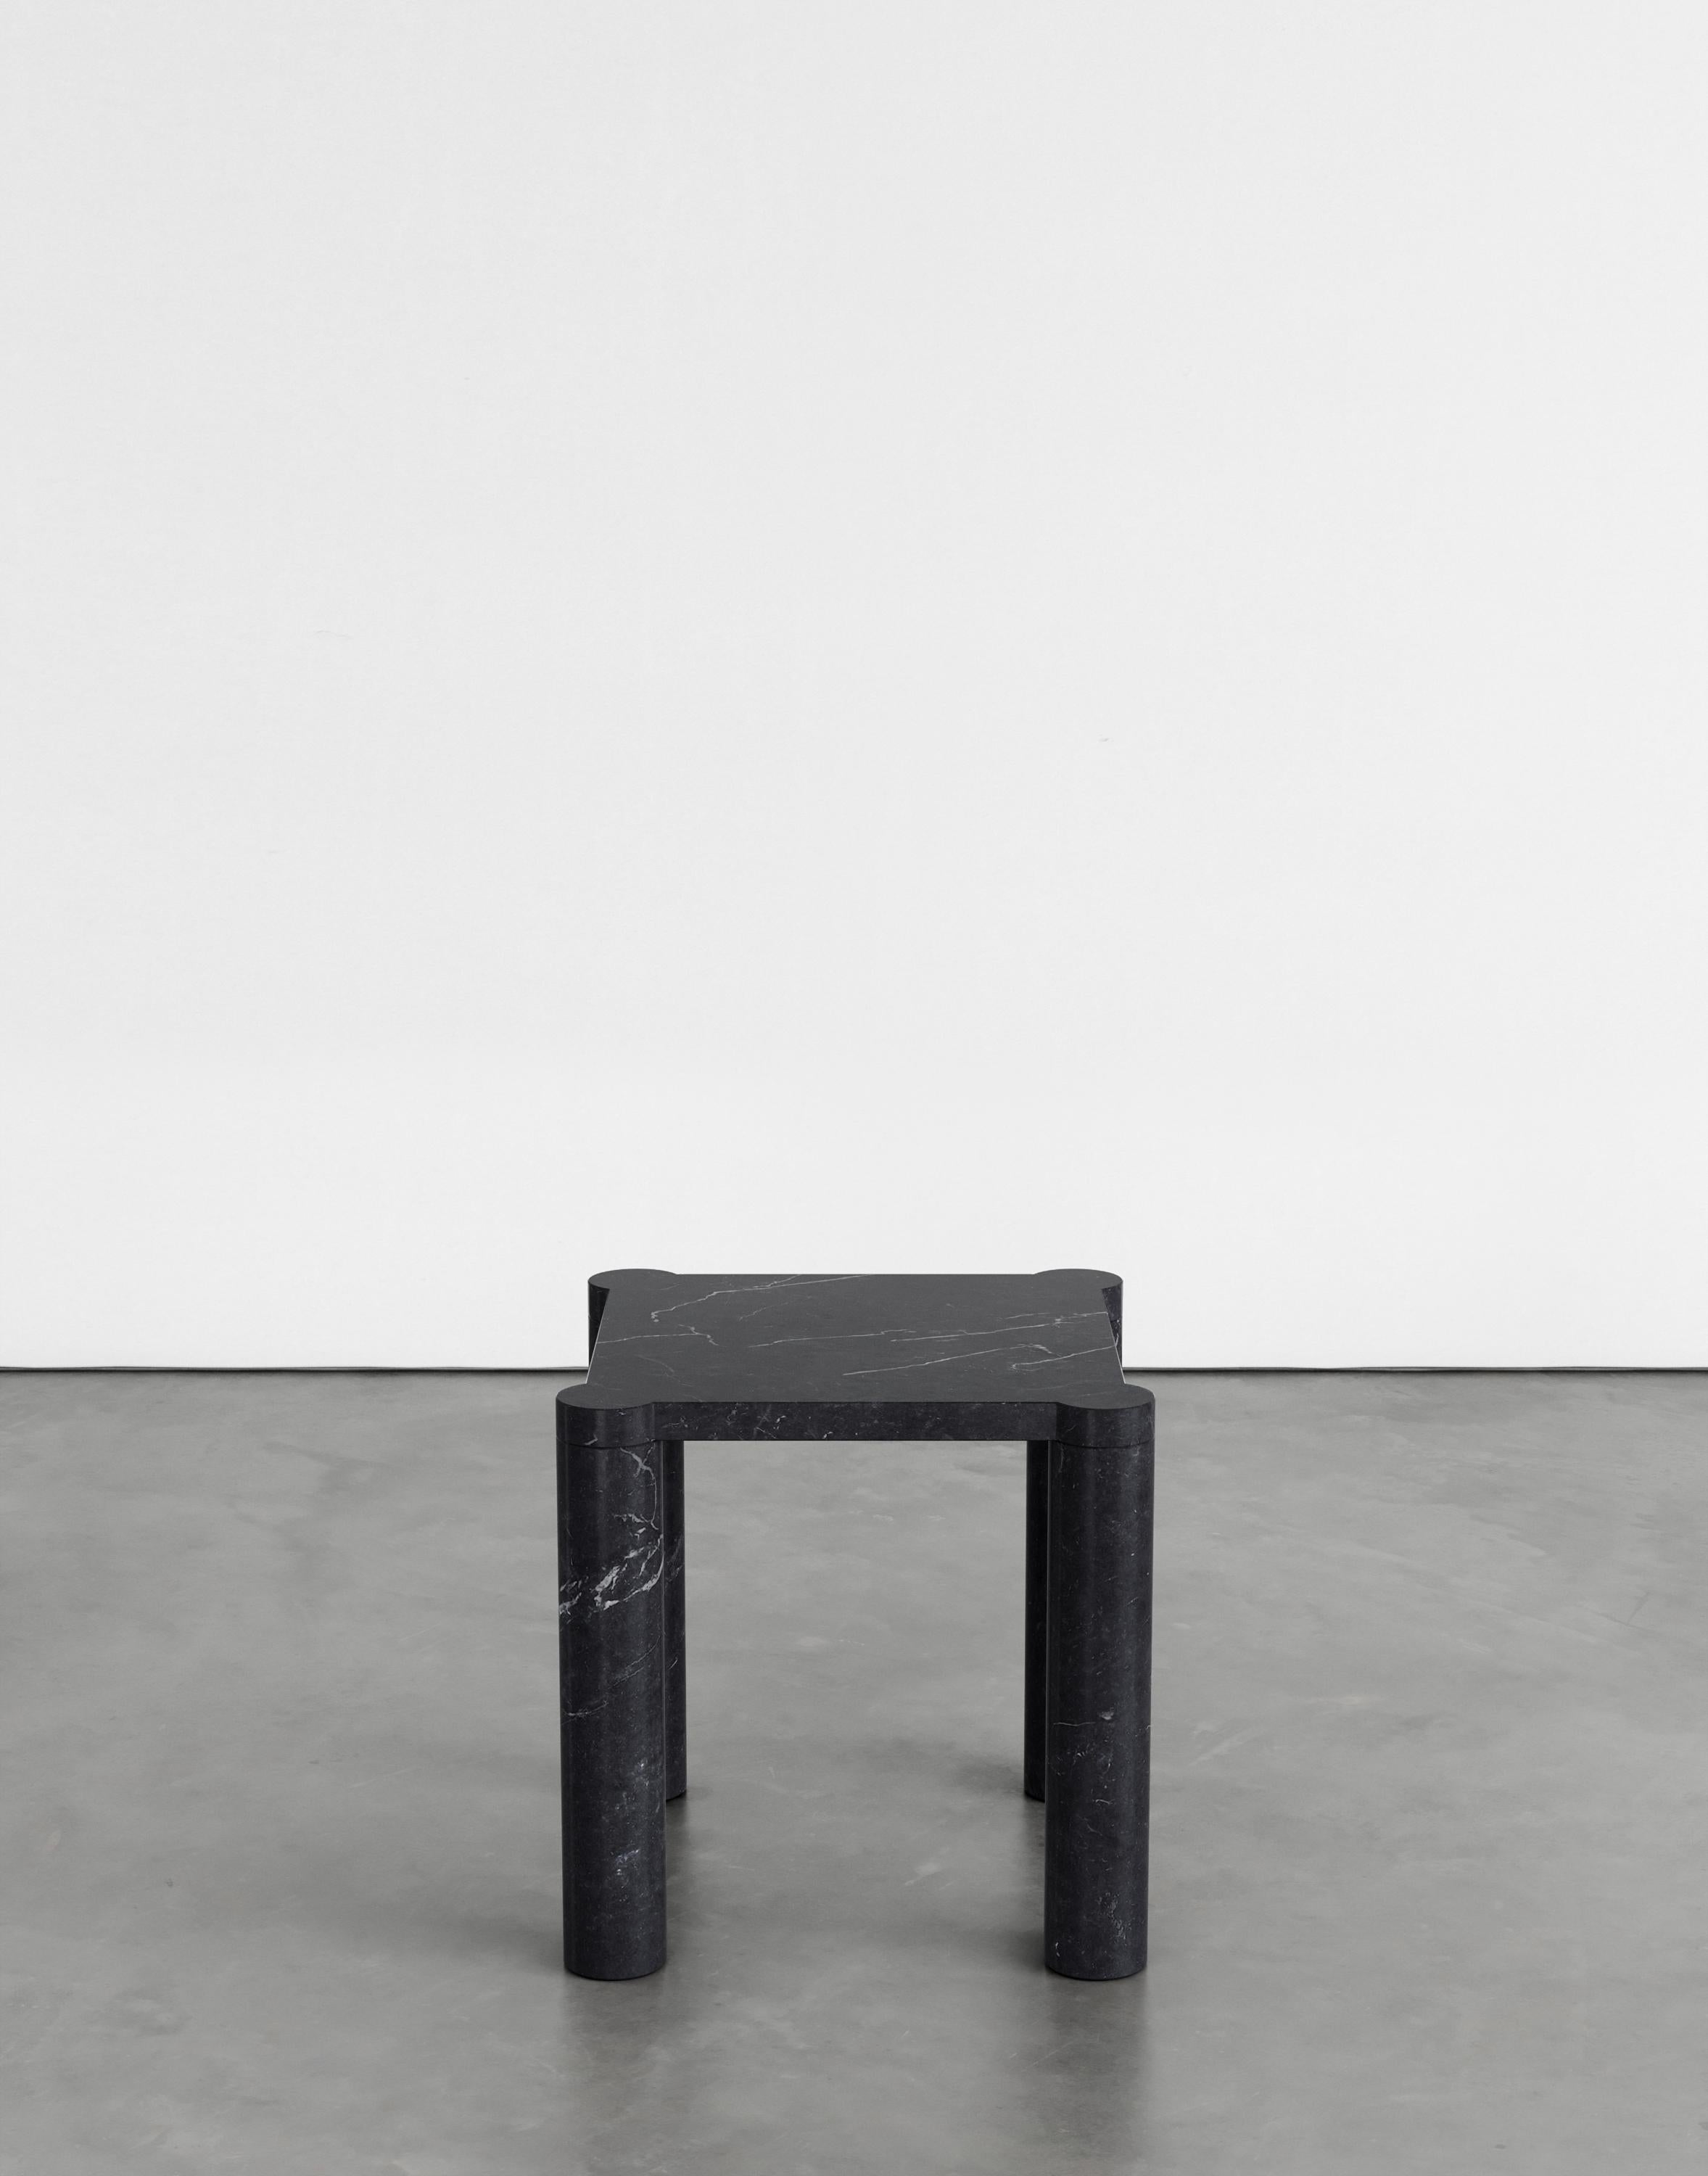 Table d'appoint Alessio 45 par Agglomerati 
Dimensions : D 45 x L 45 x H 45 cm 
Matériaux : Marquina noir. Disponible dans d'autres pierres. 

Agglomerati est un studio basé à Londres qui crée des meubles en pierre distinctifs. Fondé en 2019 par